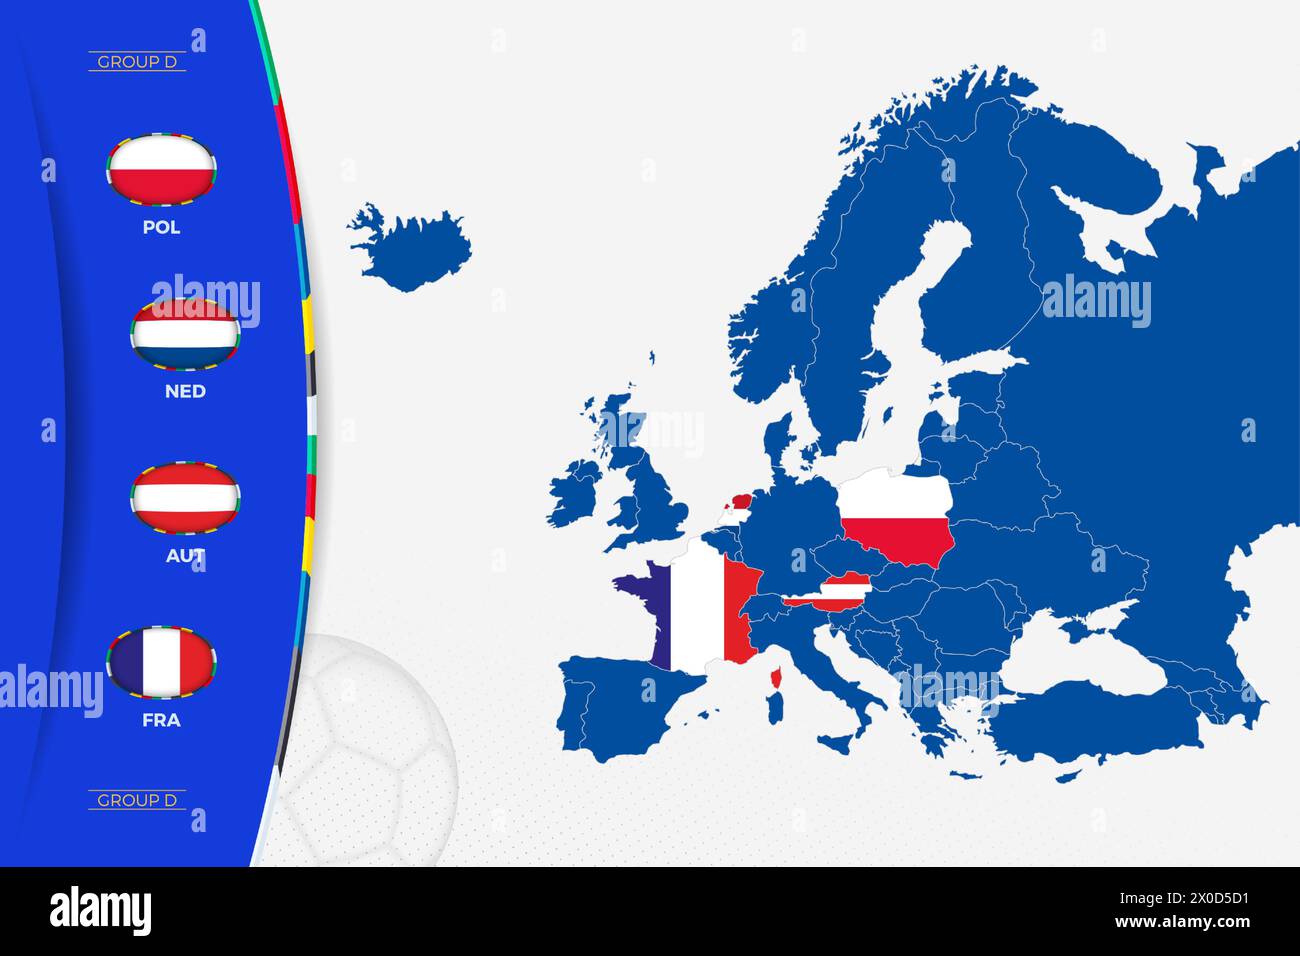 Mappa dell'Europa con mappe marcate dei paesi che partecipano al gruppo D del torneo europeo di calcio 2024. Icona delle bandiere del gruppo D. Illustrazione Vettoriale